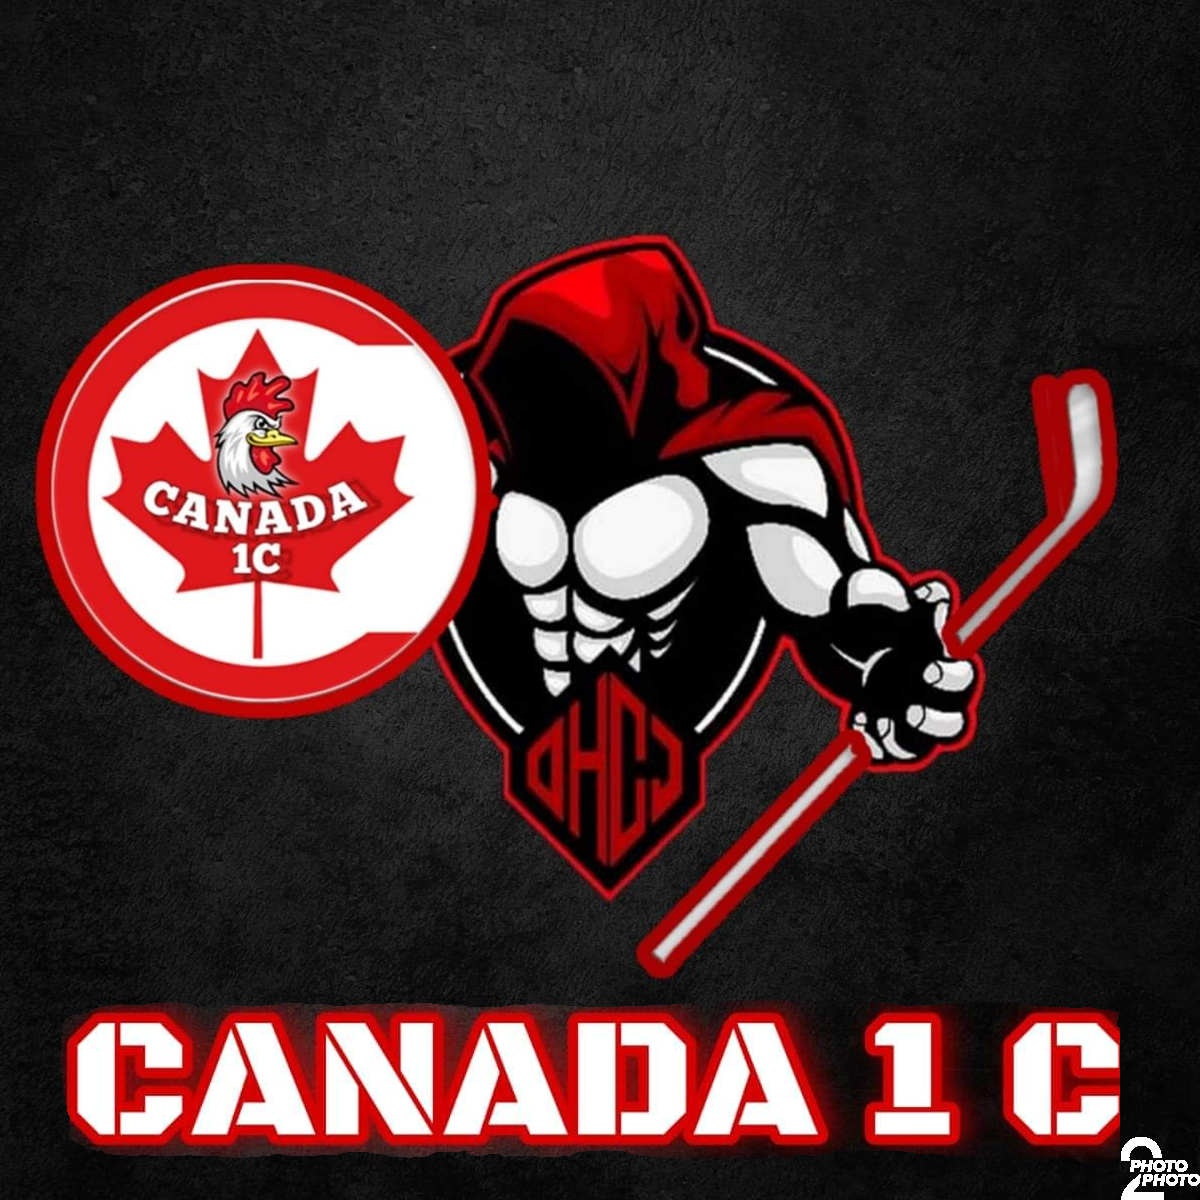 Canada 1C